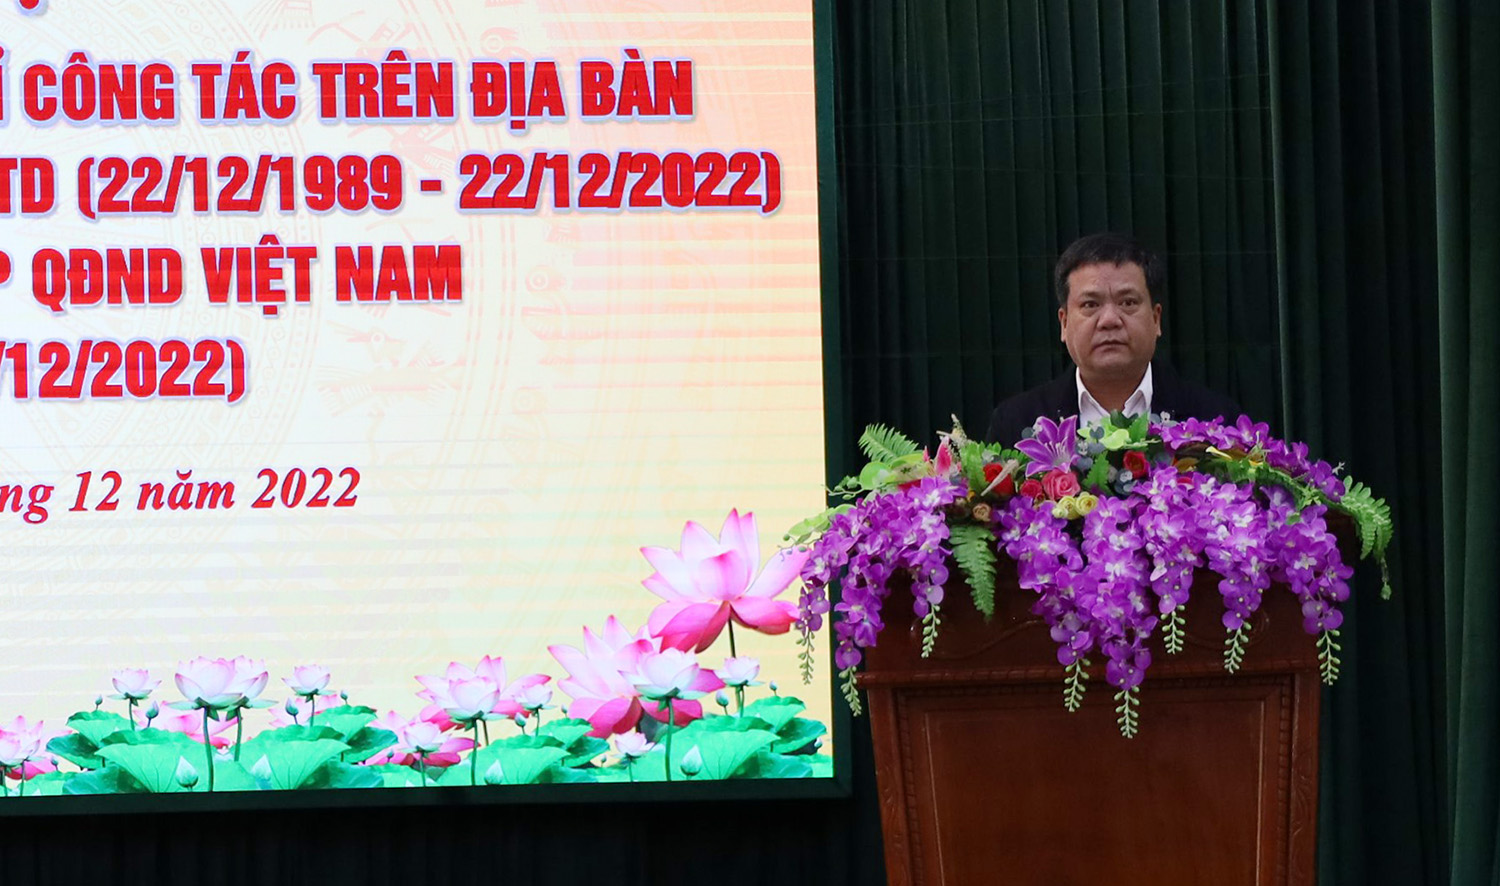 Đồng chí Bí thư Thành ủy Trần Phong phát biểu tại buổi gặp mặt.